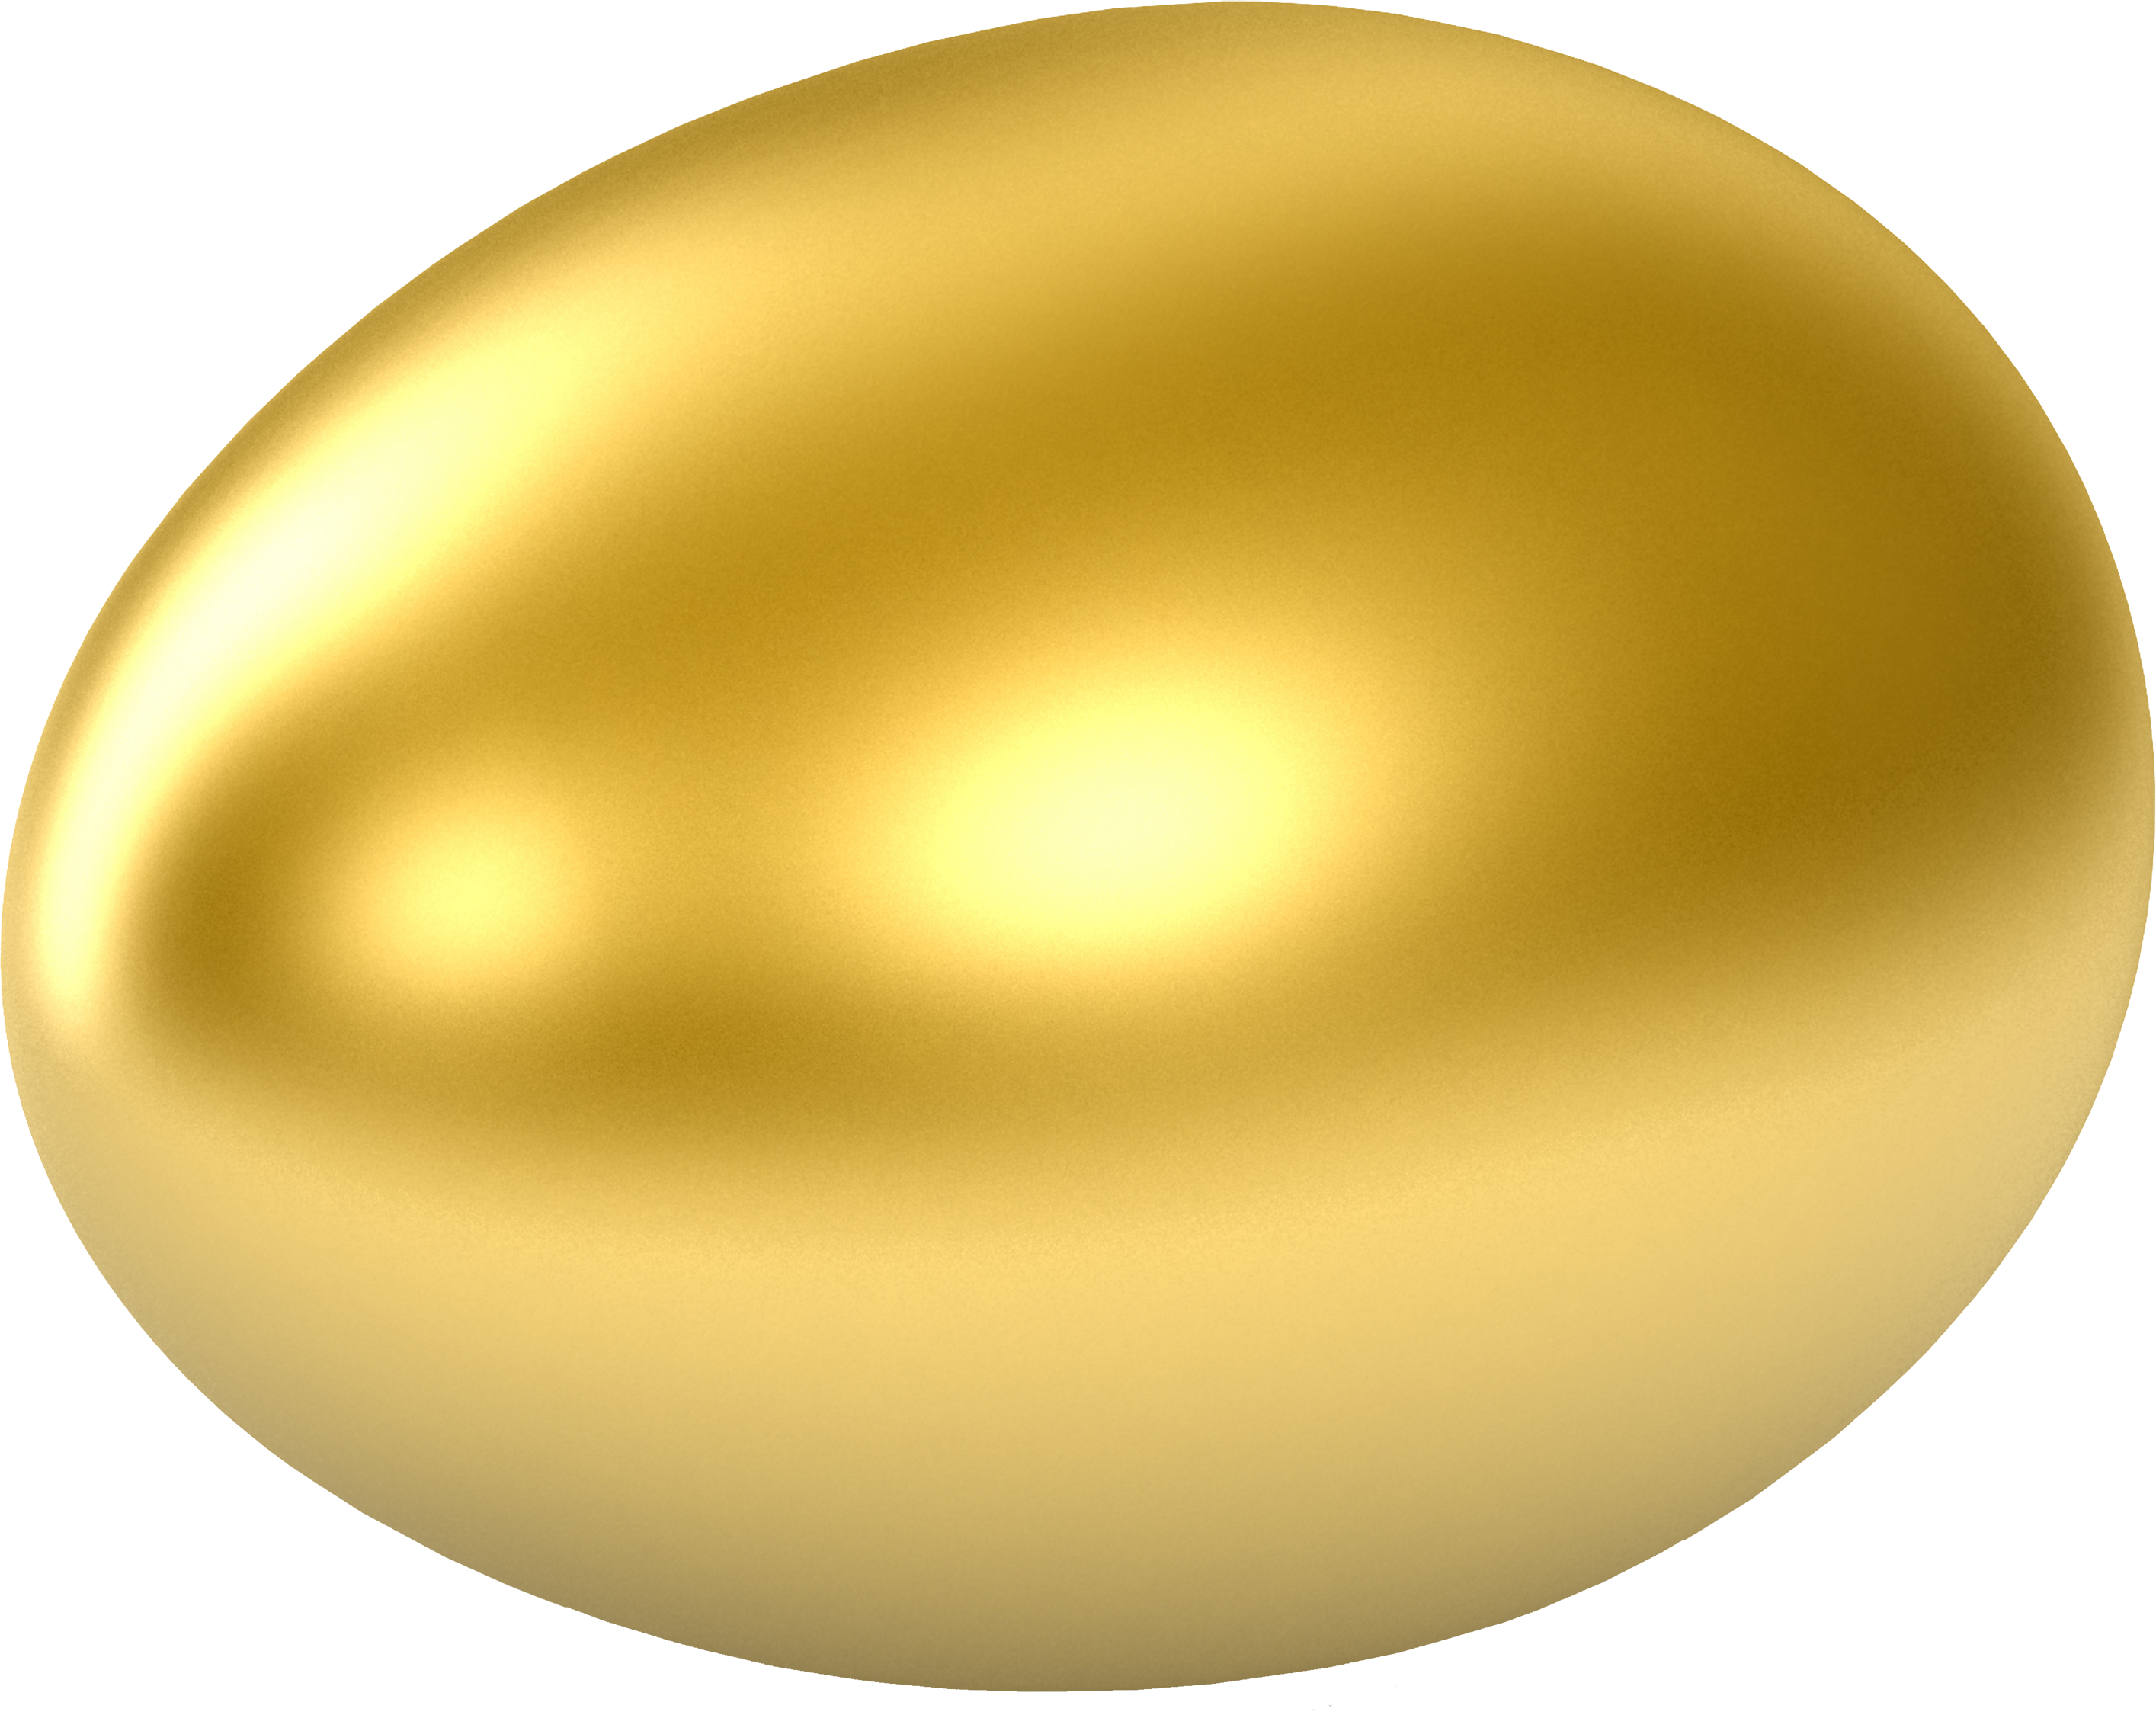 eggs clipart egg carton